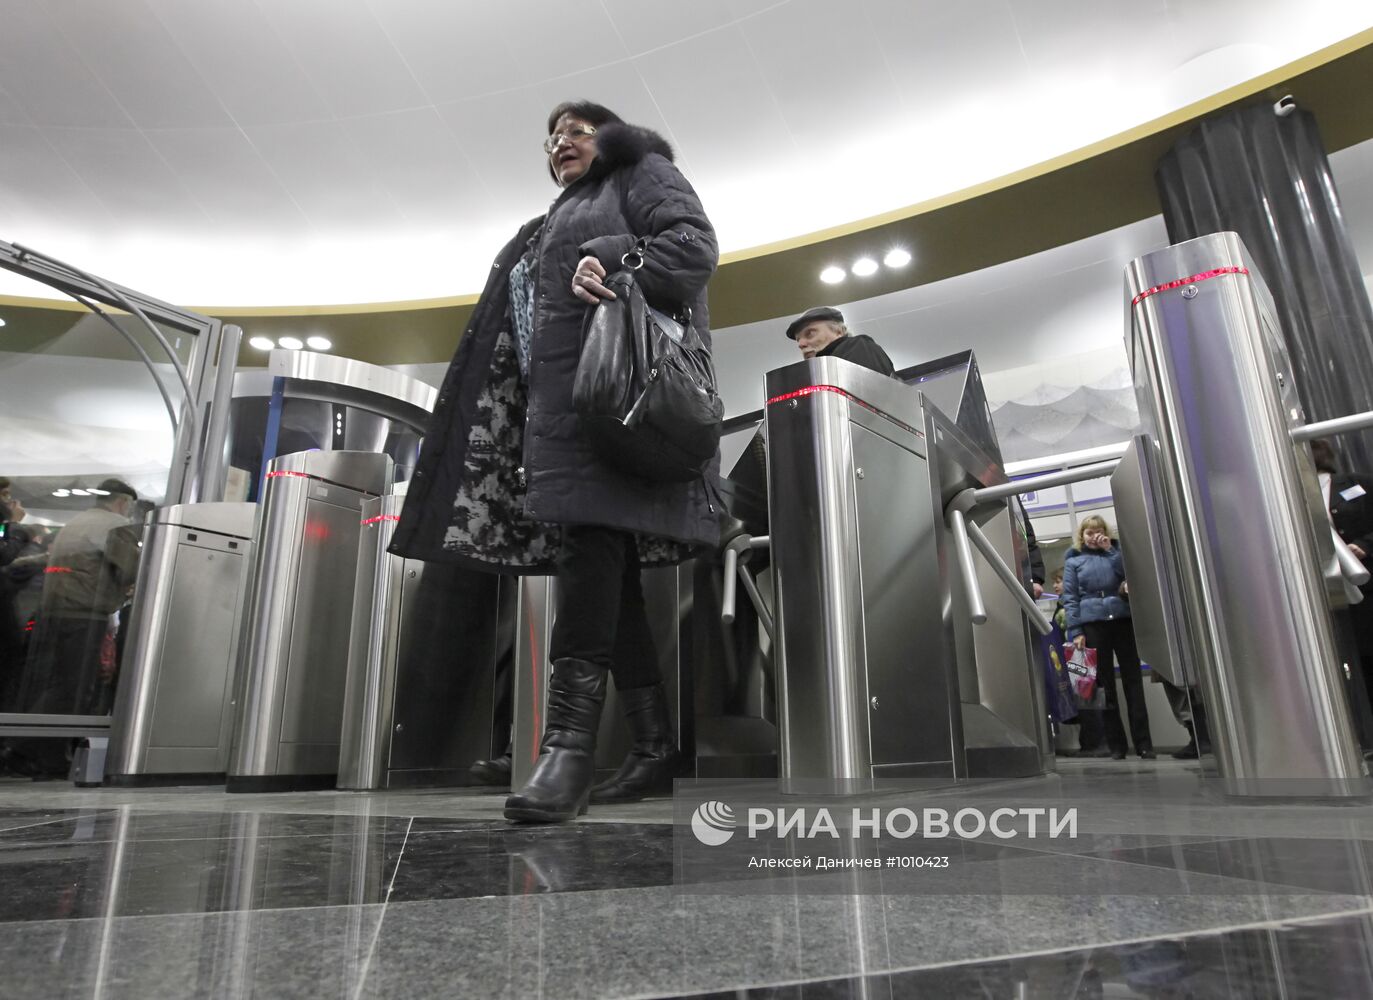 Открытие станции метро "Адмиралтейская"